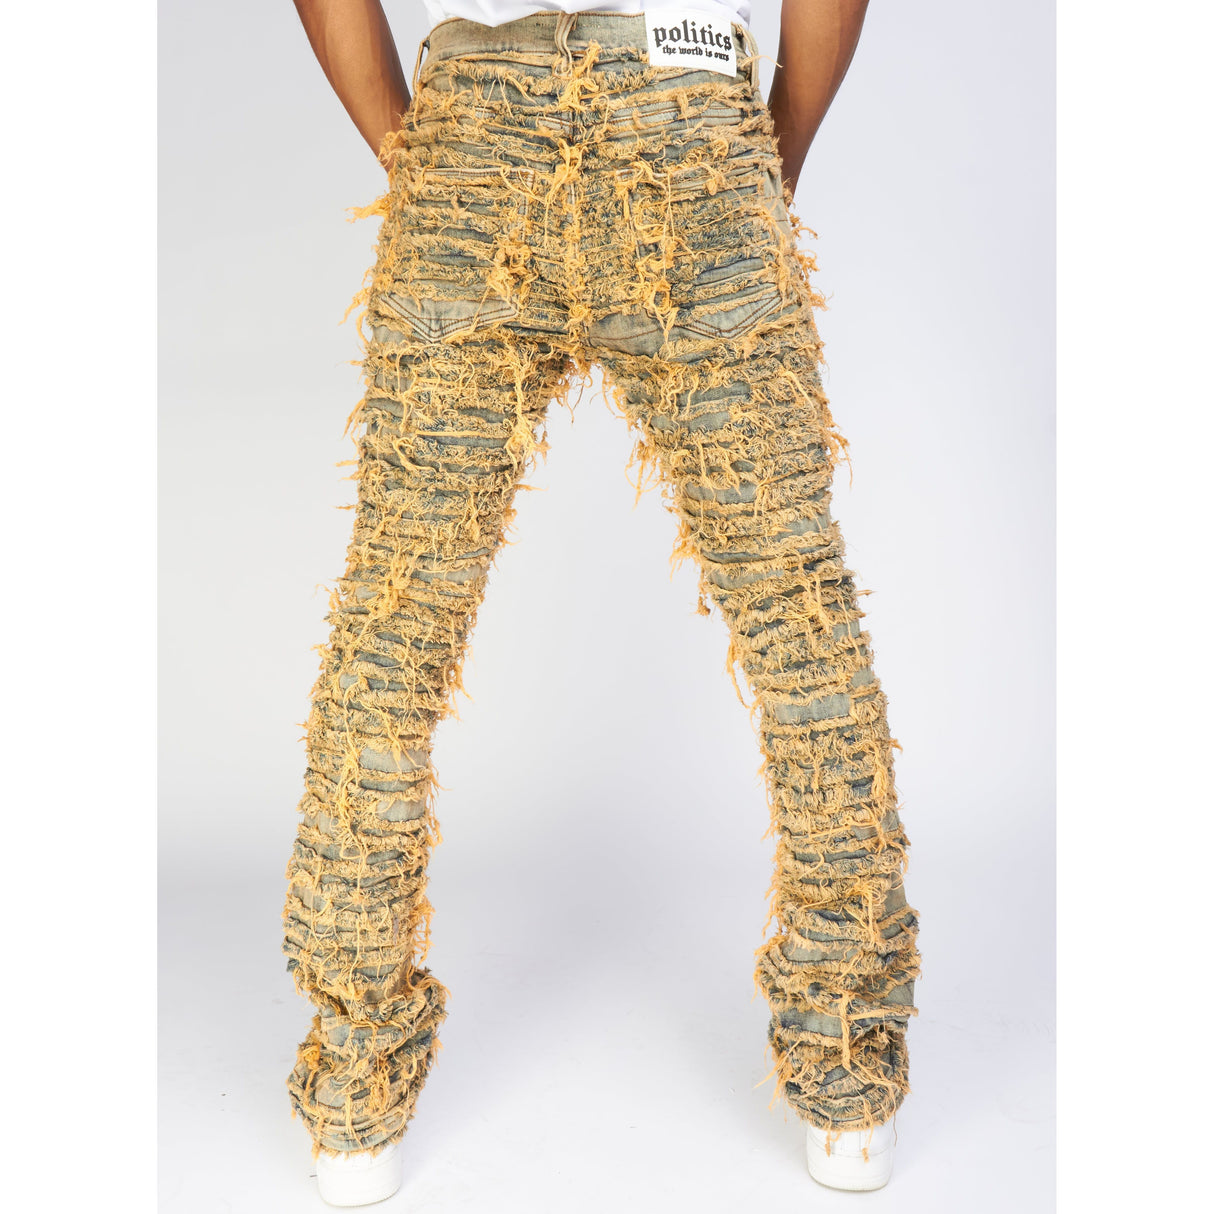 Politics Jeans - Thrashed Distressed Stacked Flare - Dark Vintage - Debris 510